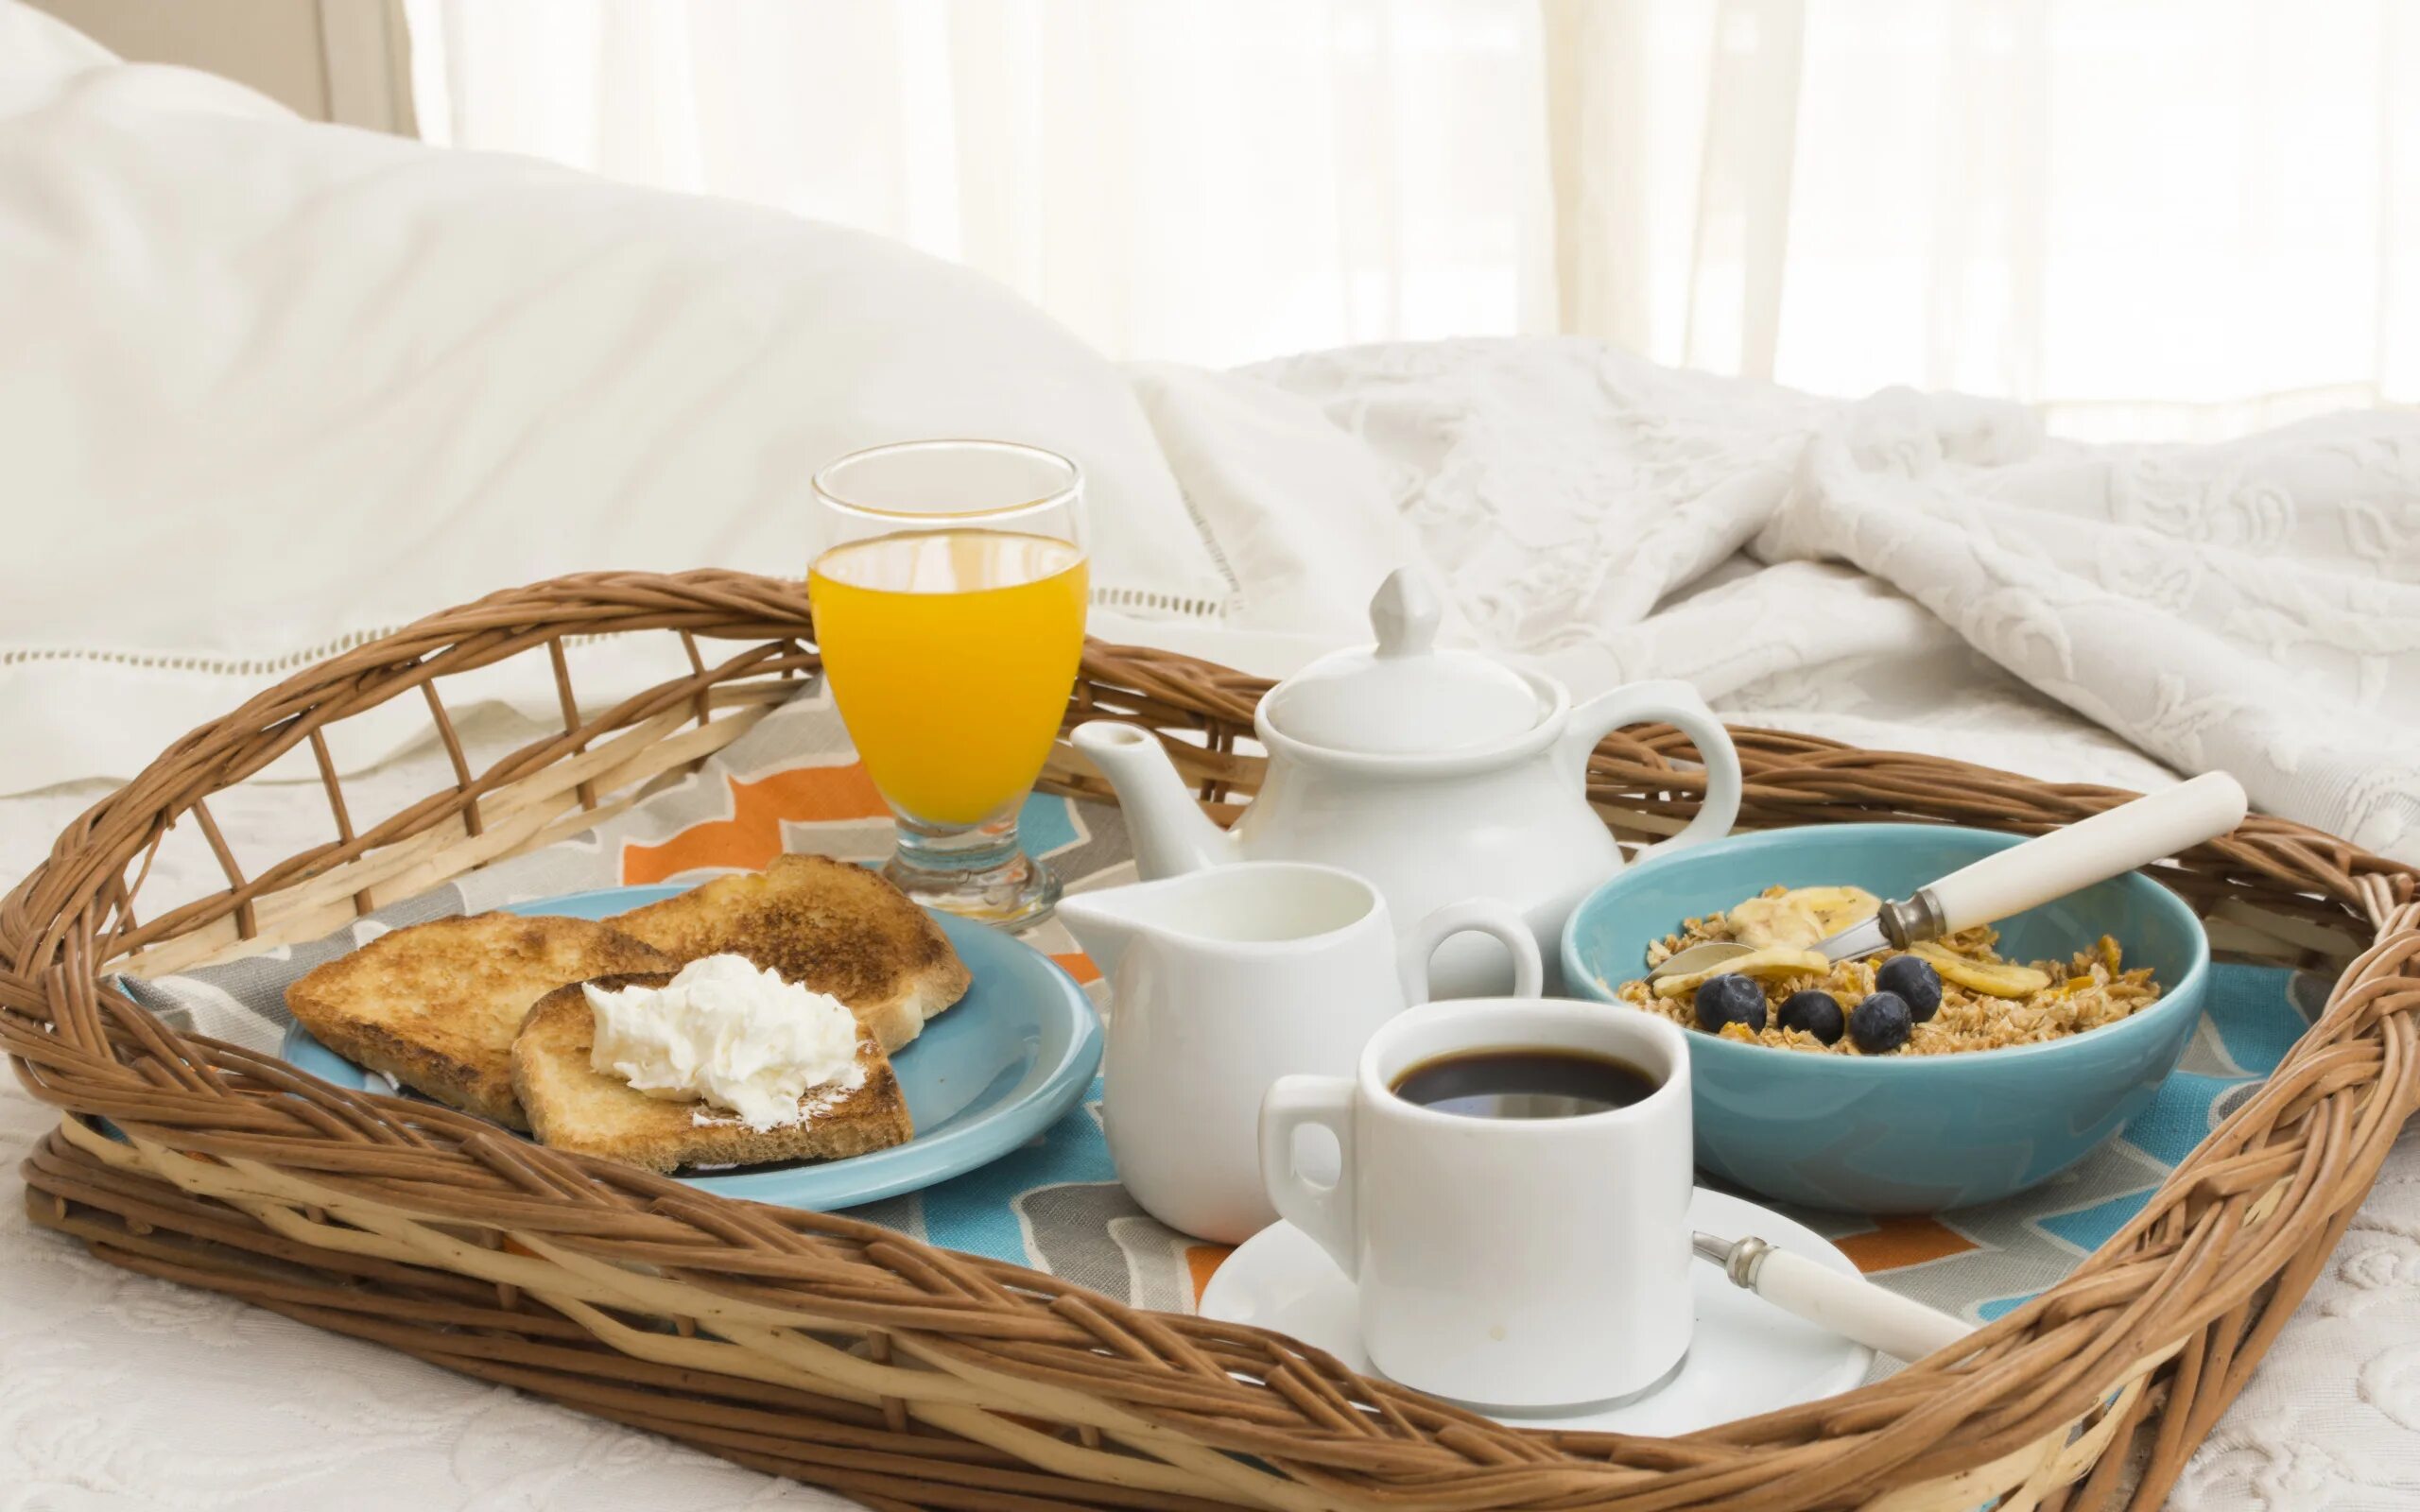 Обед в постель. Утренний завтрак. Завтрак с кофе. Завтрак в постель. Завтрак на столе.